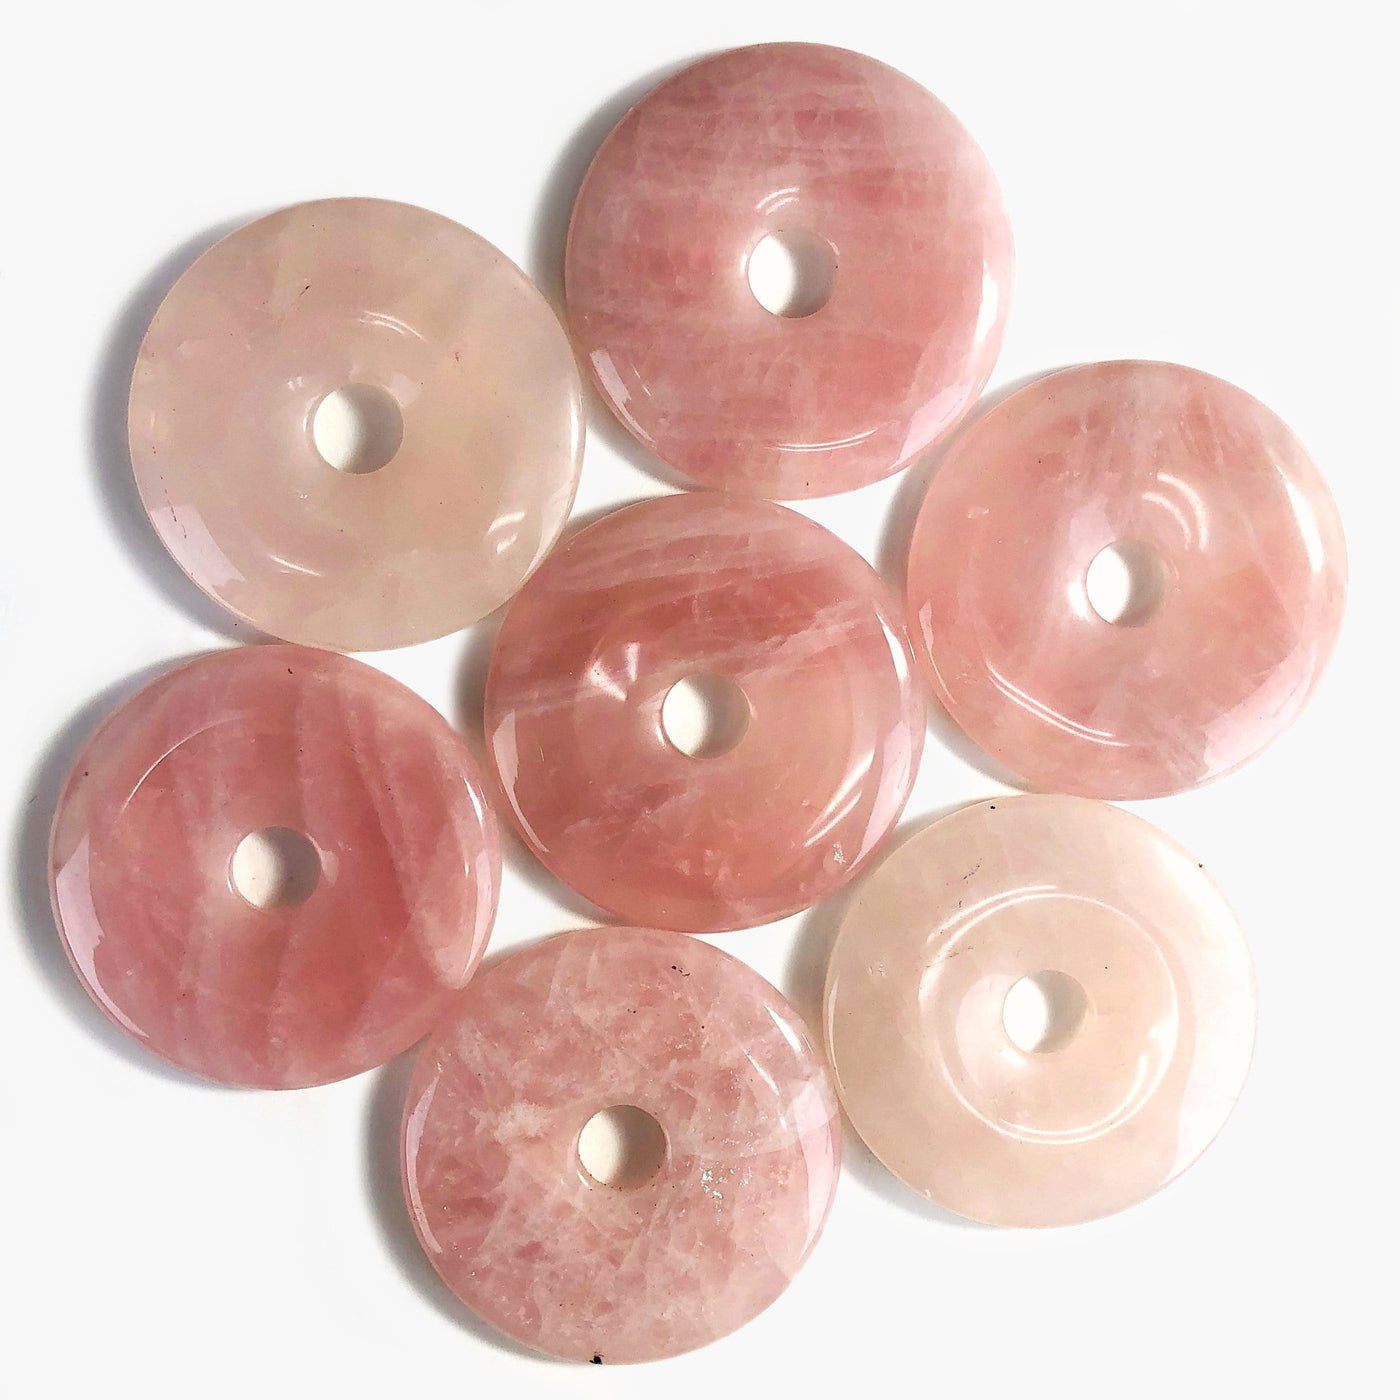 7 rose quartz donut shaped polished stones on white background